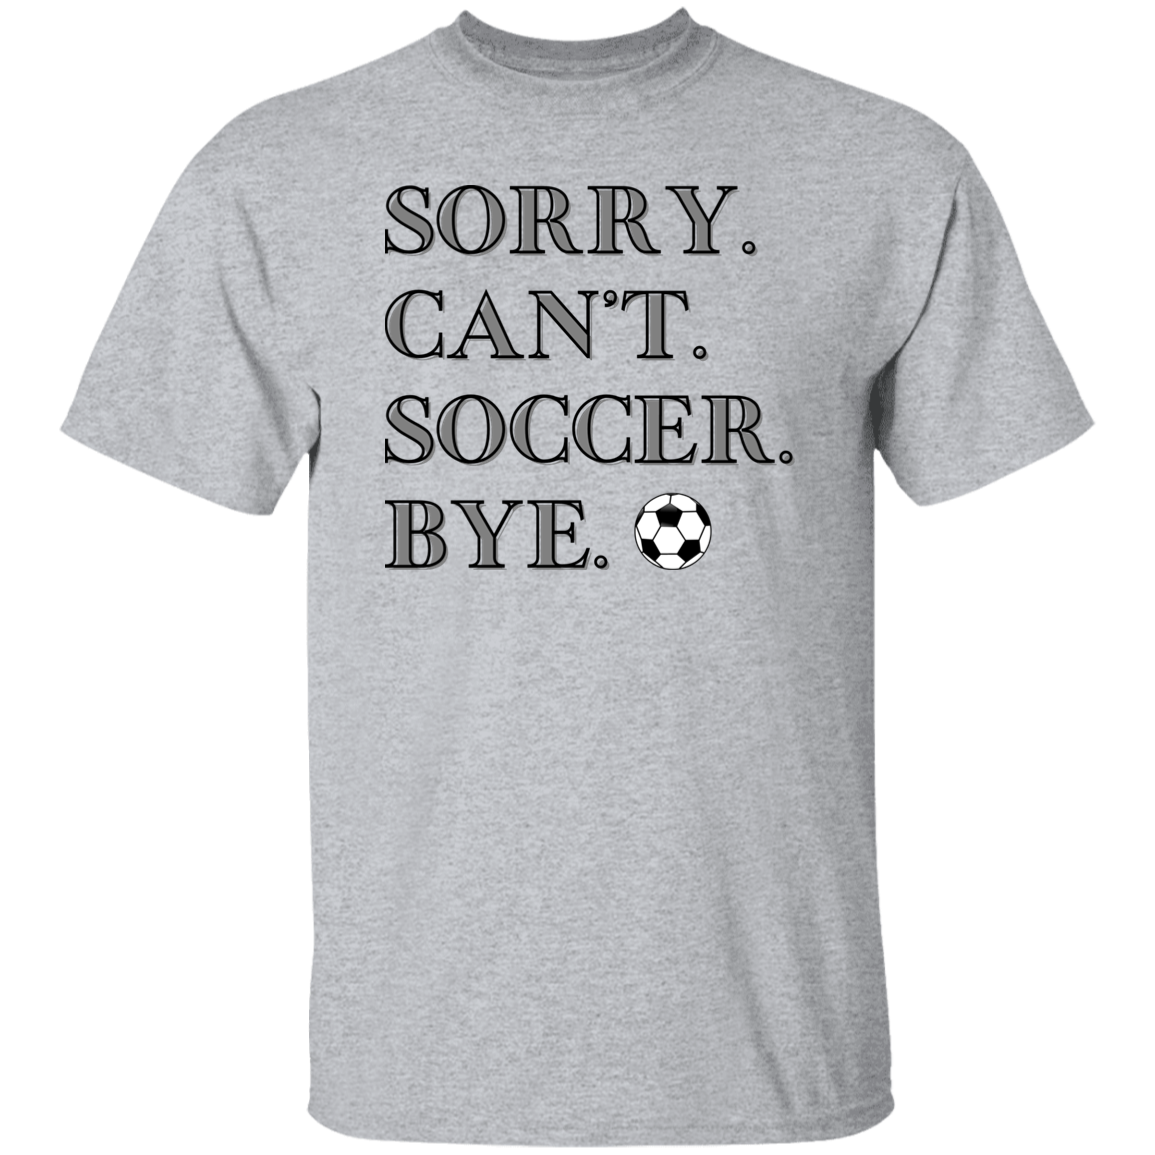 Can't Soccer Short Sleeve T-Shirt